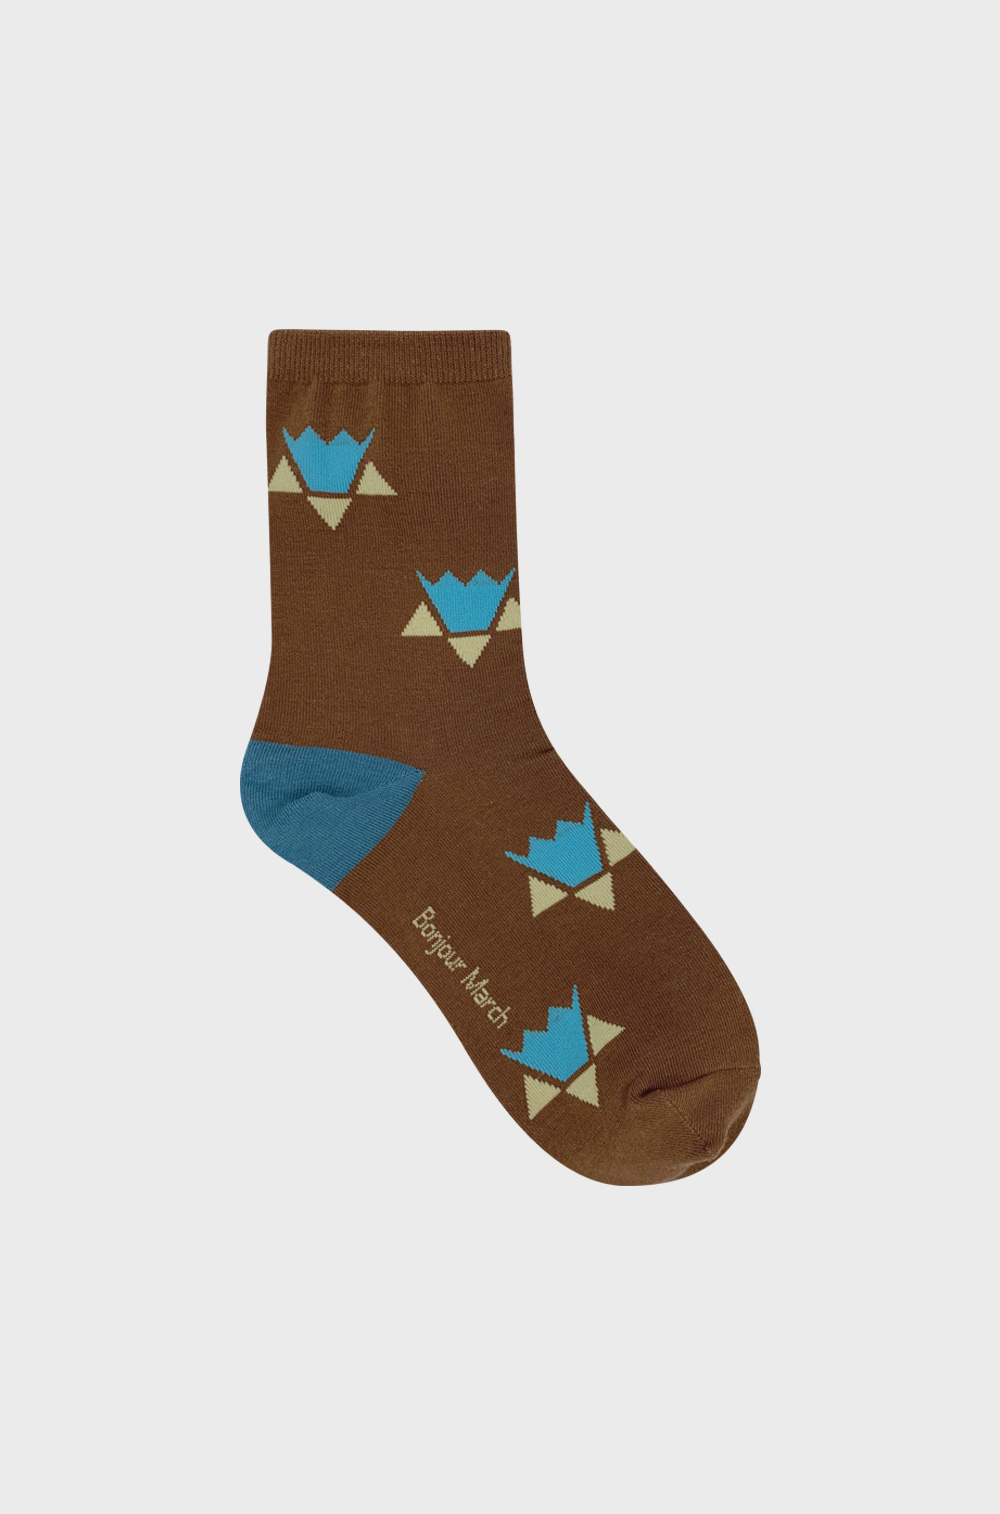 Origami socks